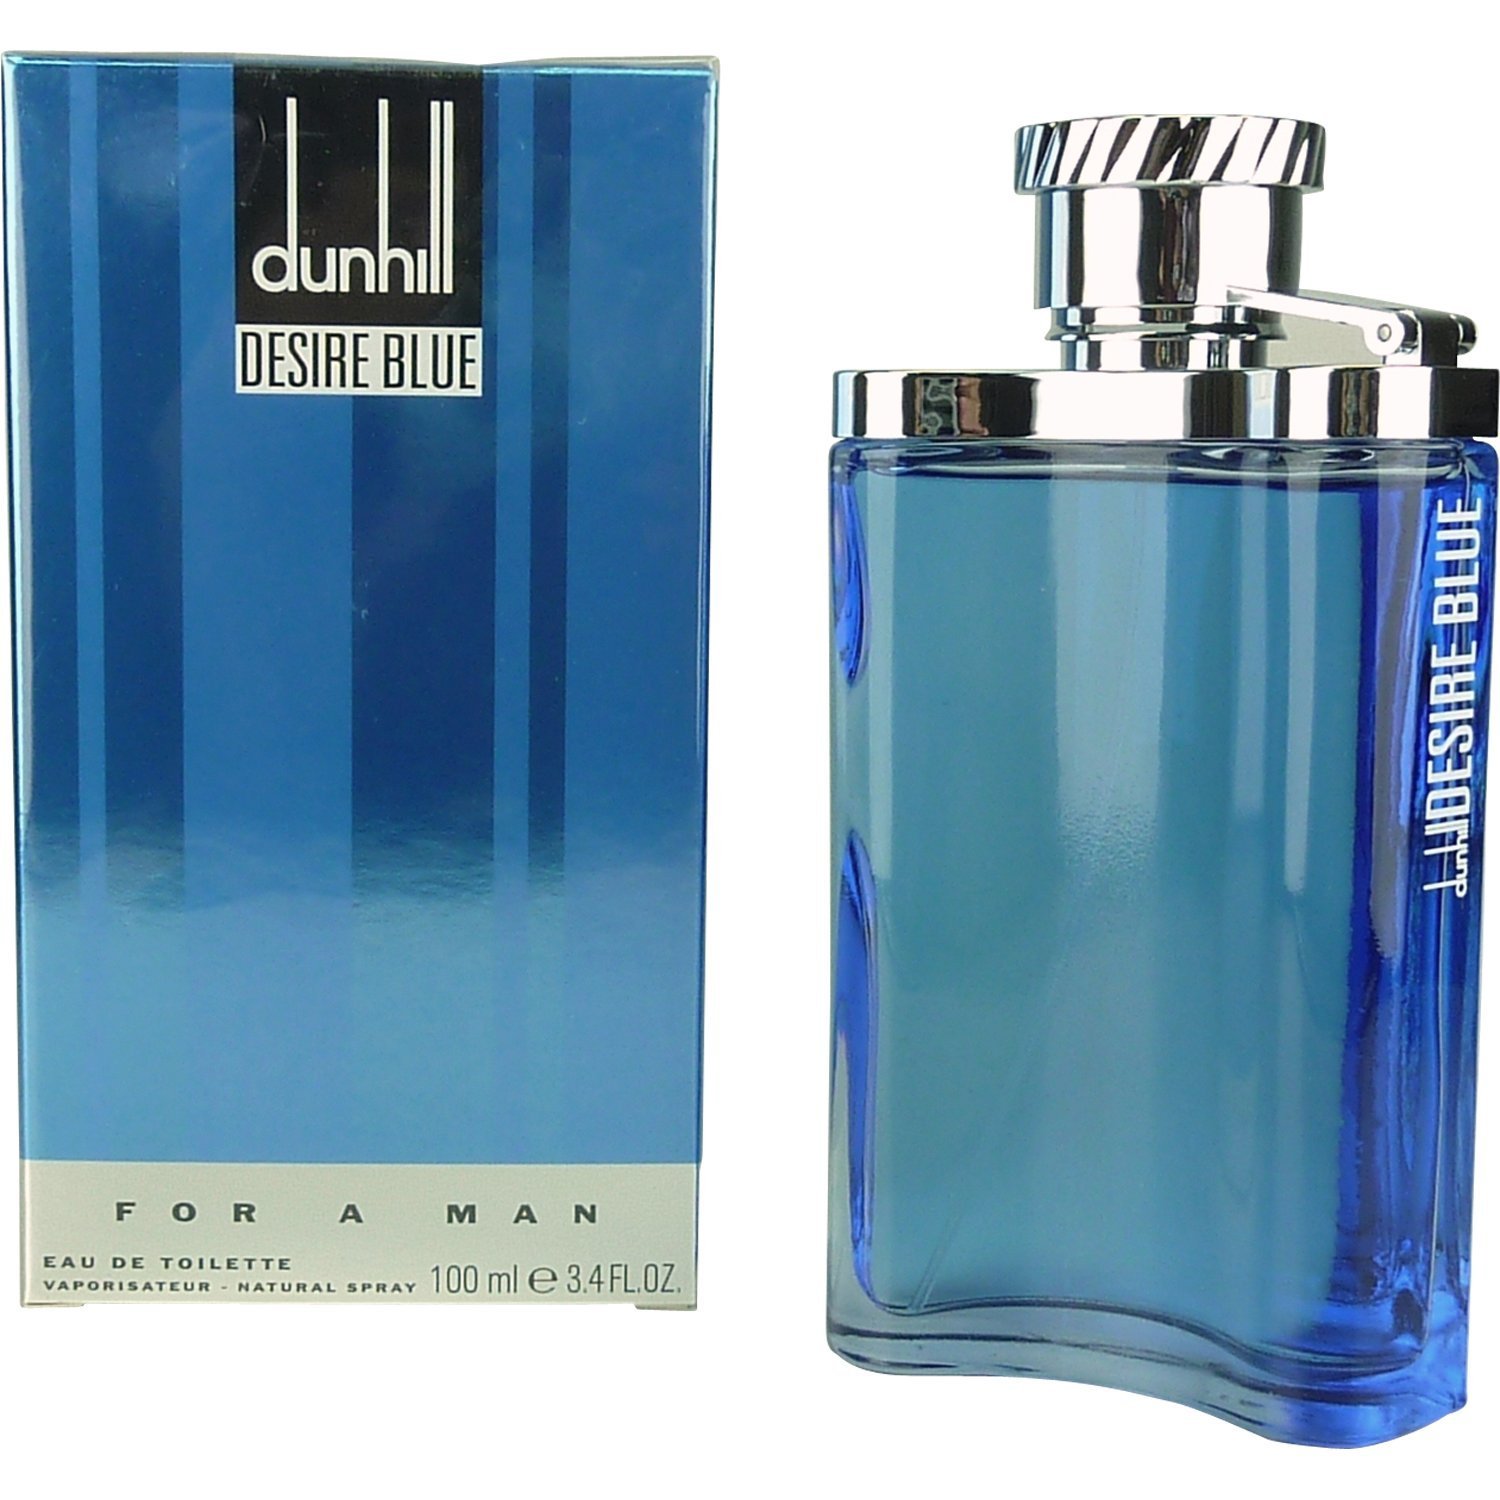 Buy Thaznpuvz Dunhill Desire Blue For A Man EDT 100ml for Men - Brand ...